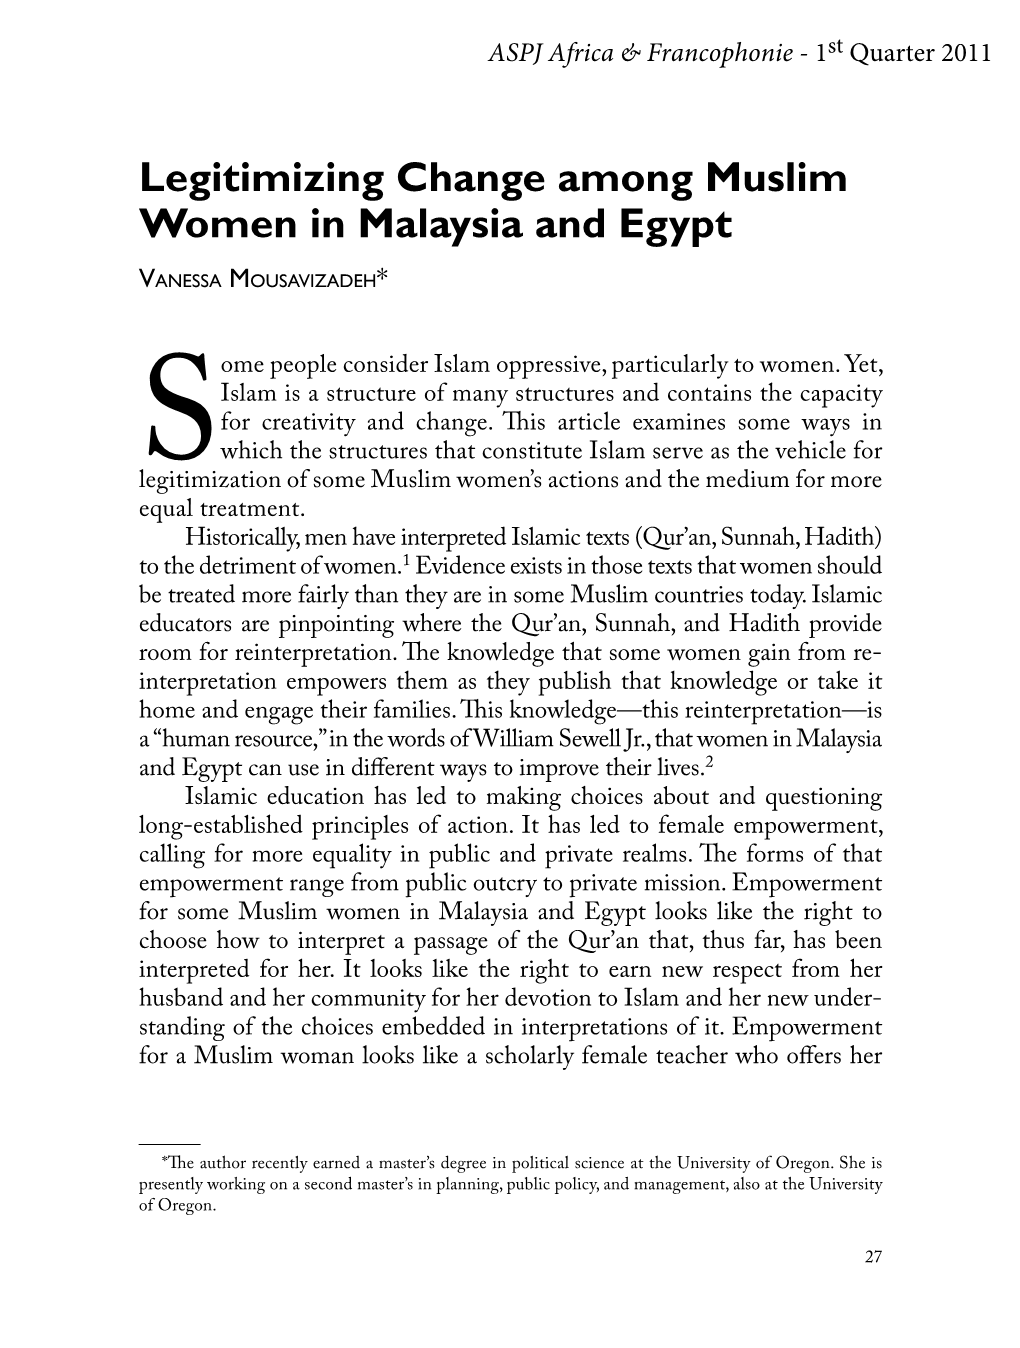 Legitimizing Change Among Muslim Women in Malaysia and Egypt